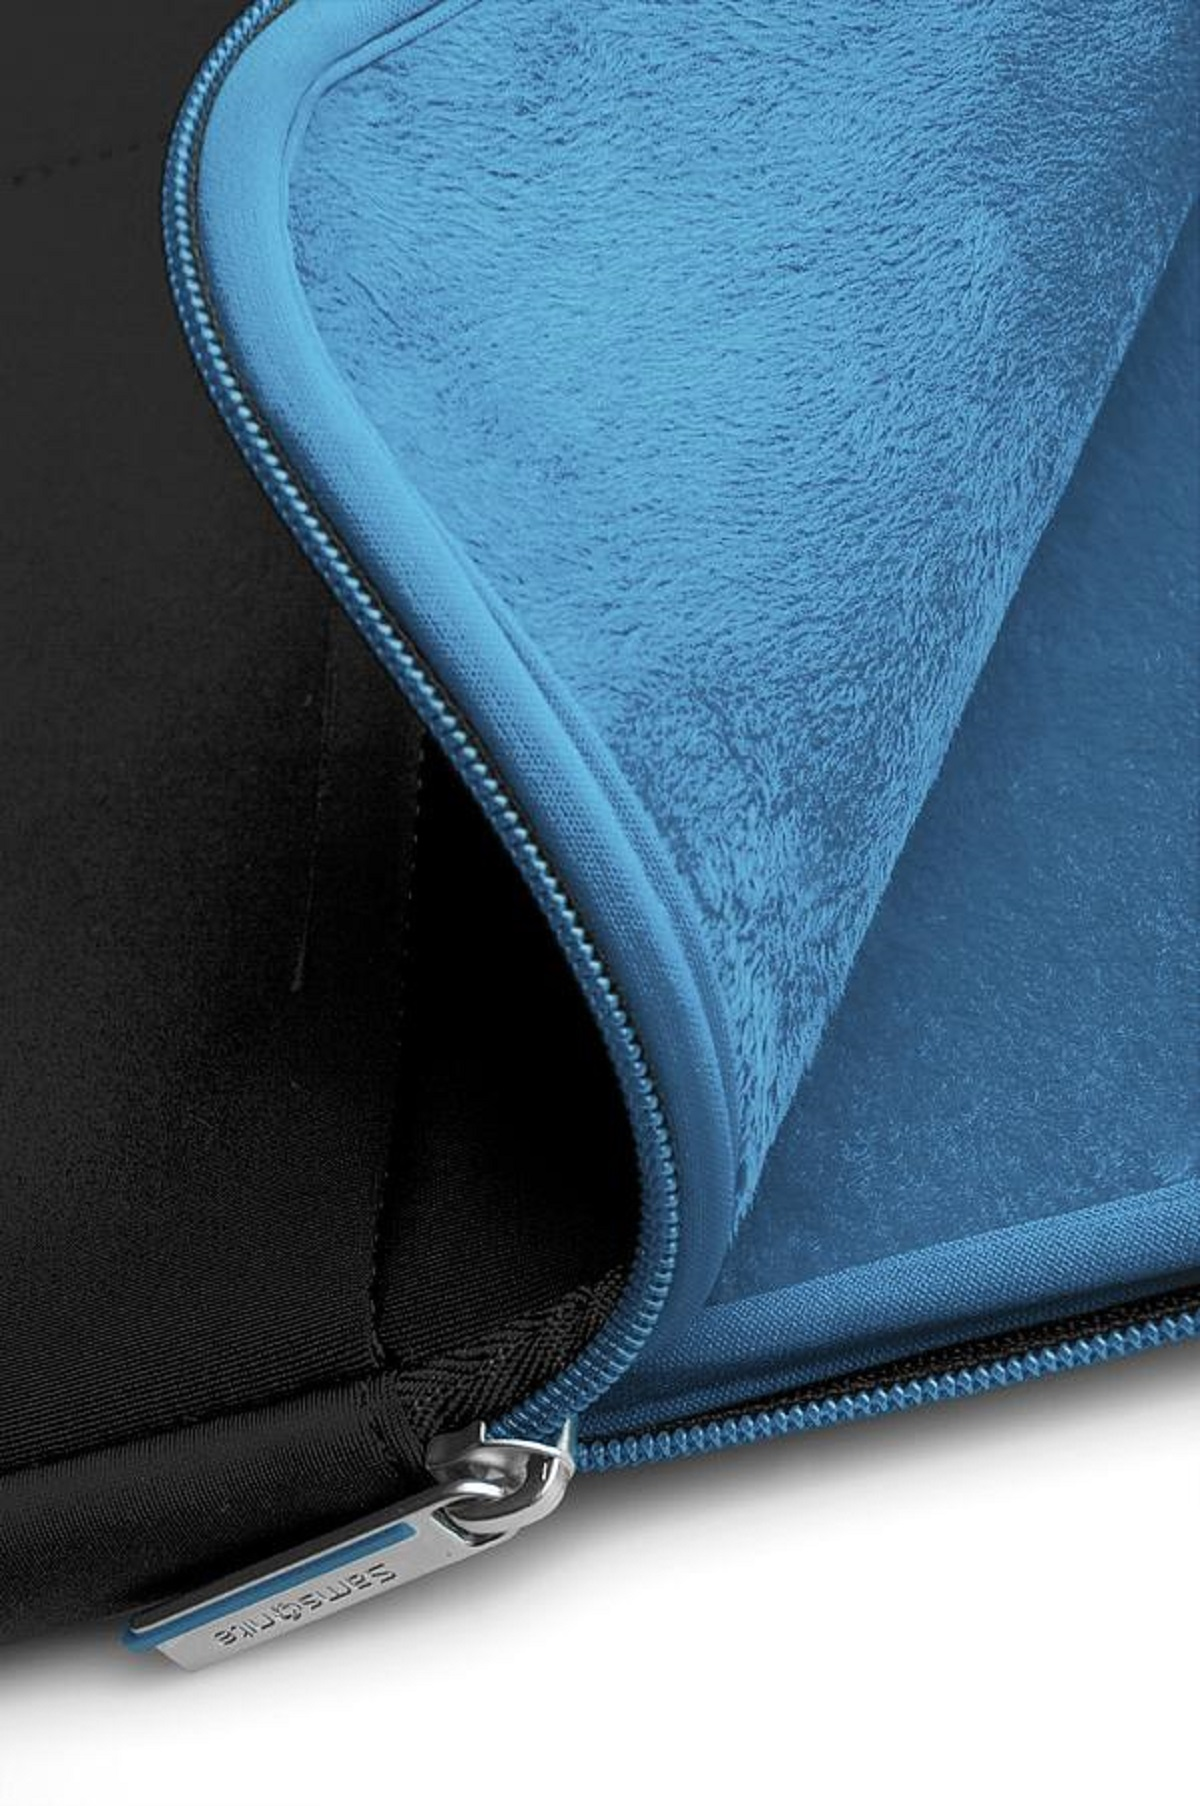 Universal für Sling-Tasche Schwarz/Blau Airglow Notebookhülle Neoprene, SAMSONITE